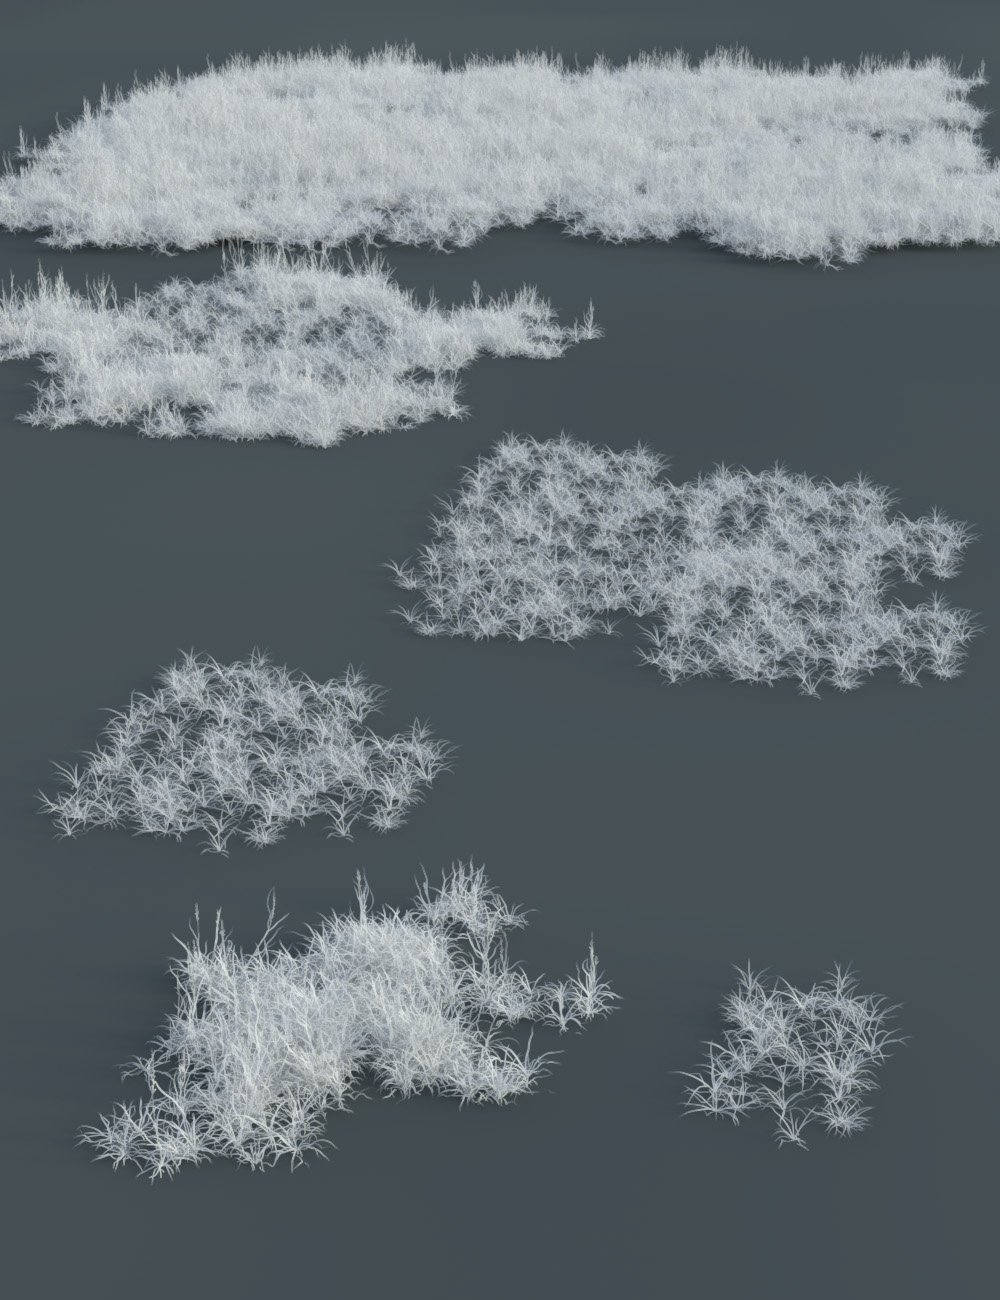 Frosty Plants - Low Res Winter Plants by: MartinJFrost, 3D Models by Daz 3D